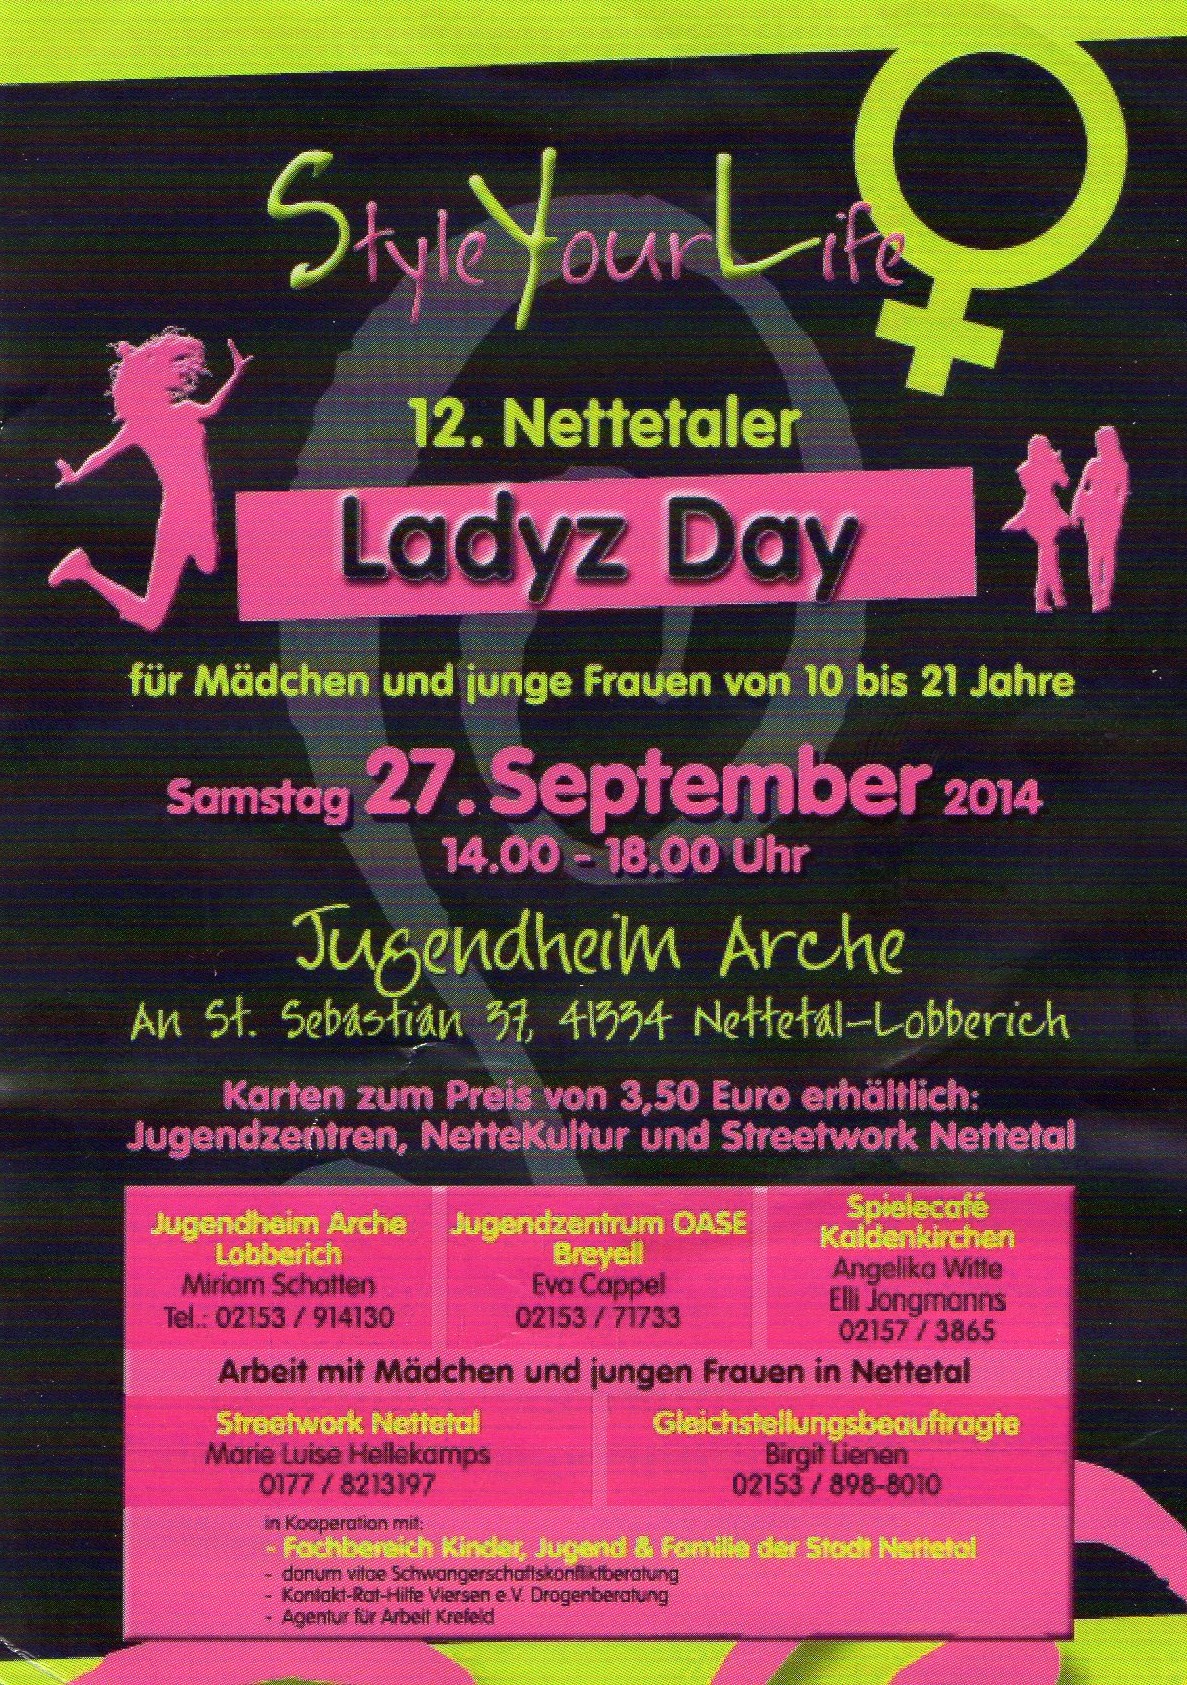 12. Ladyz day 14